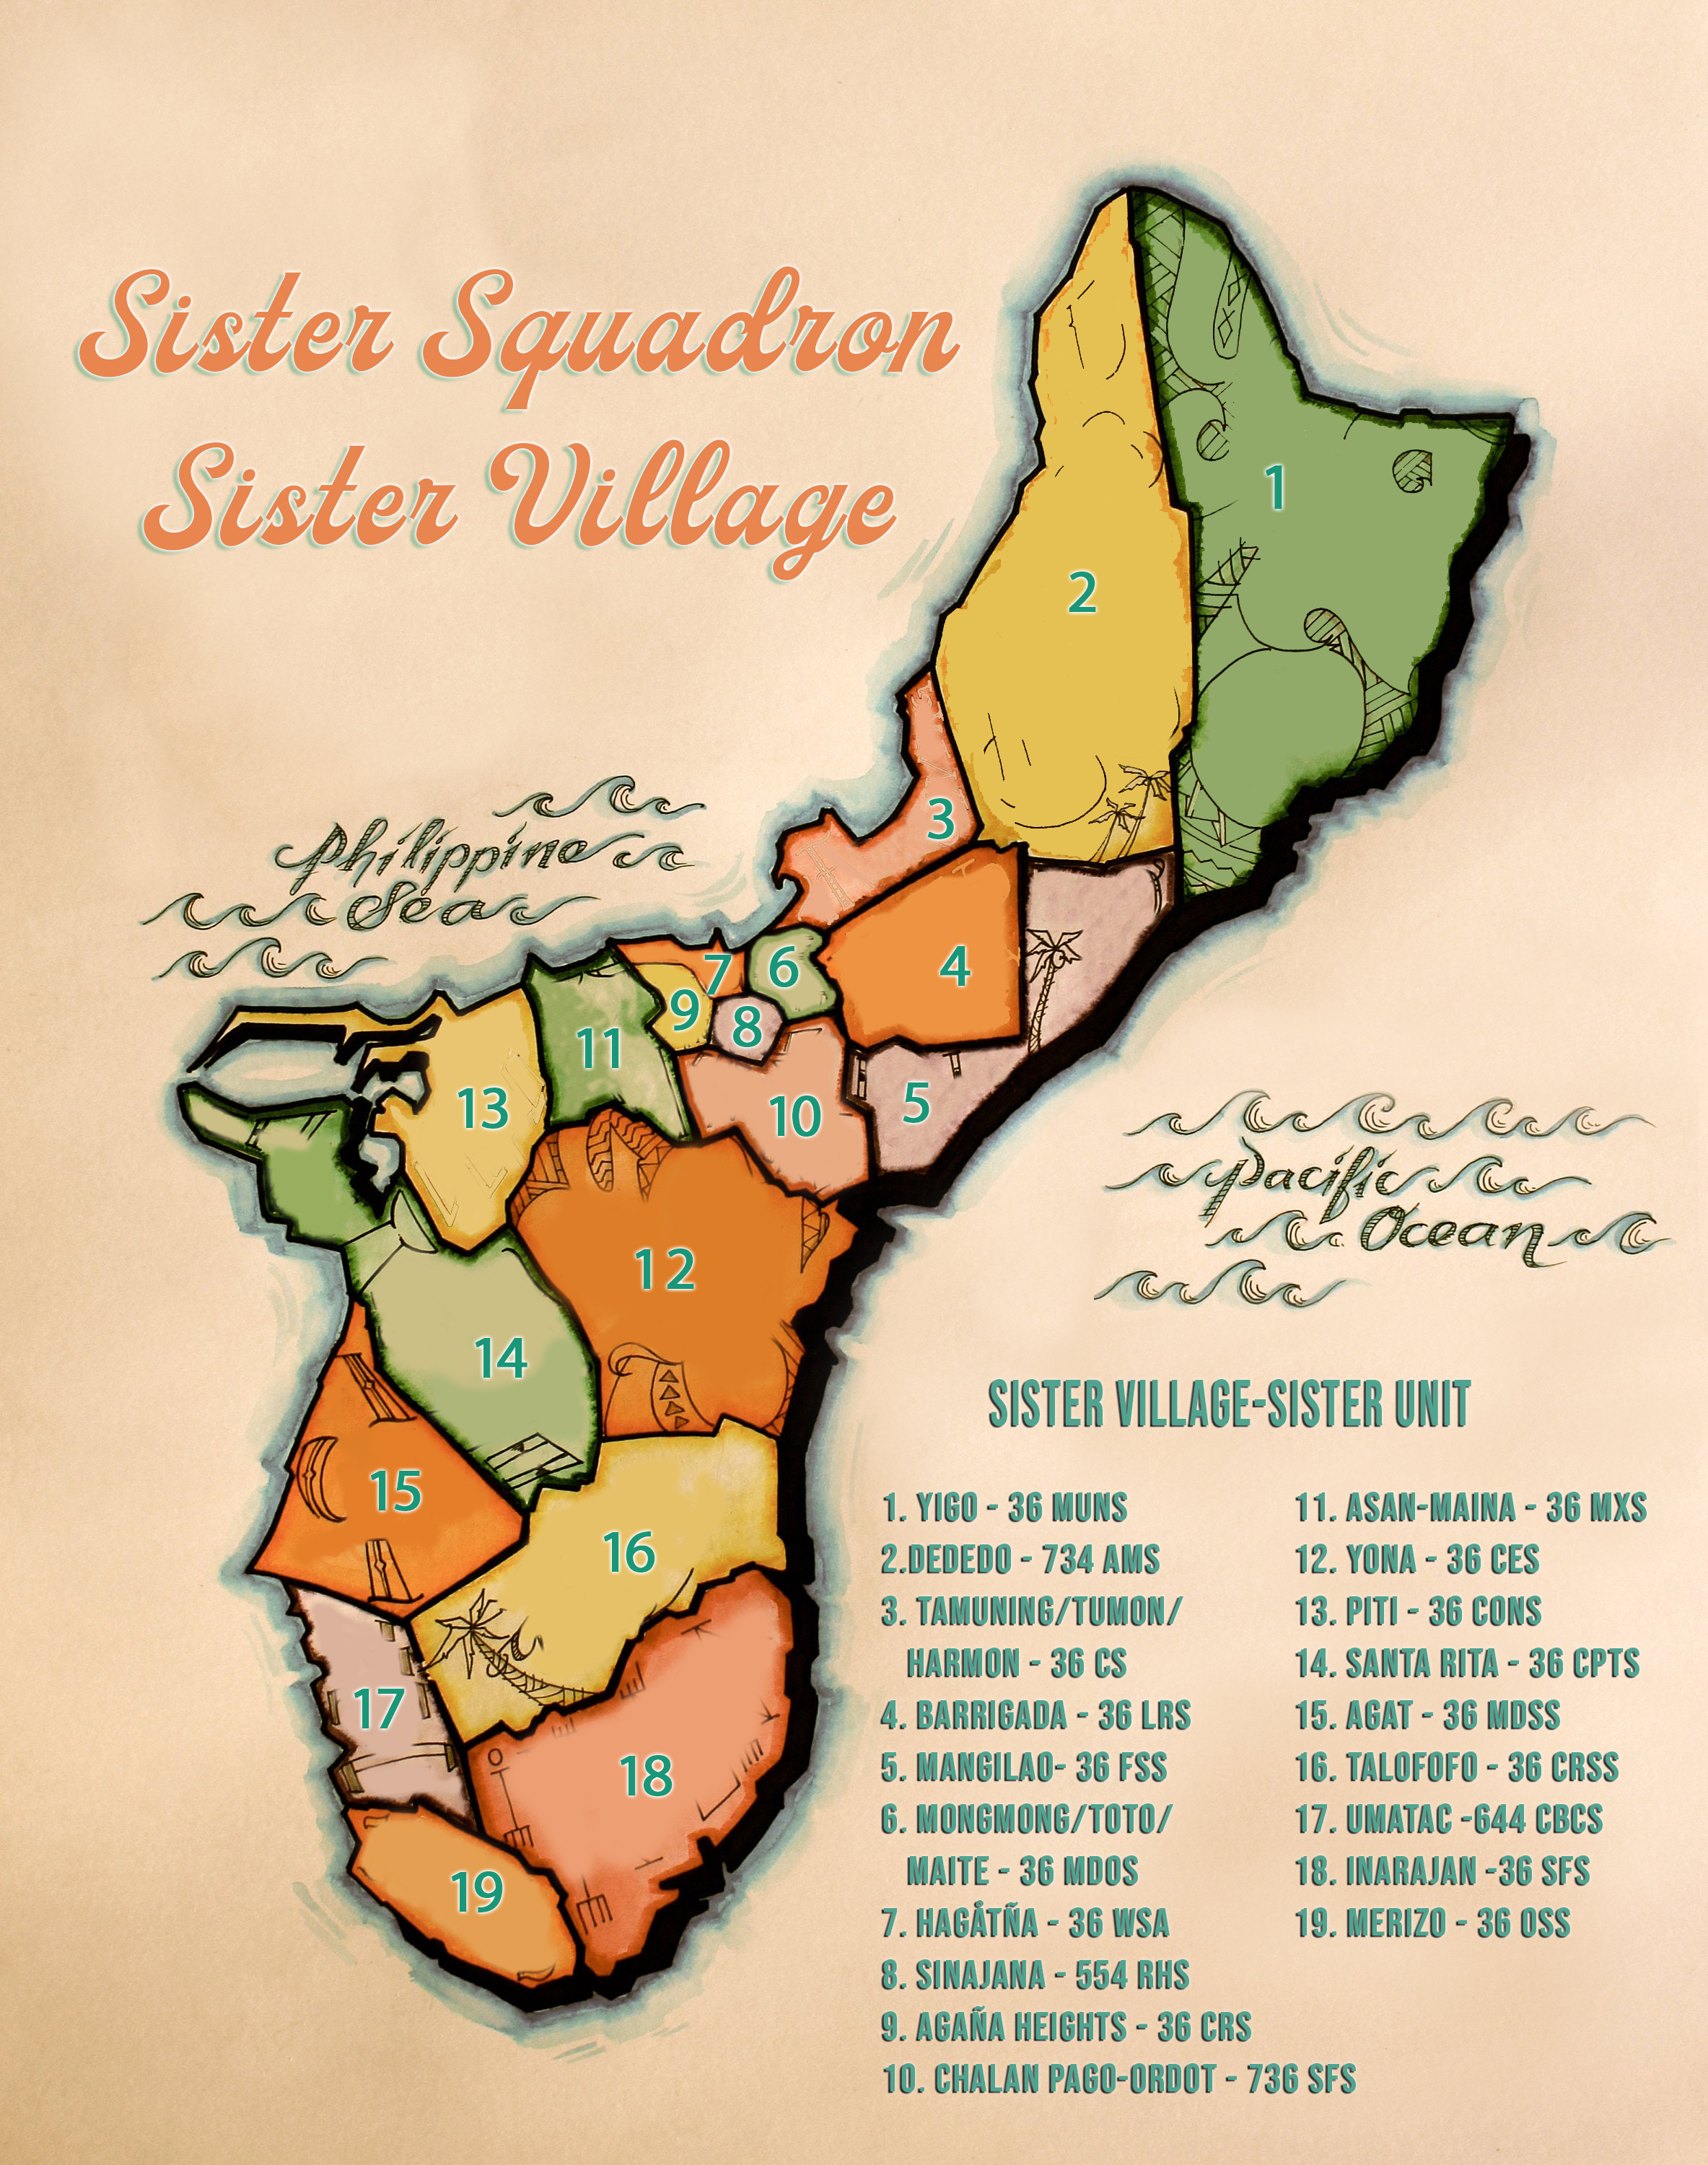 Sister Squadron Villages